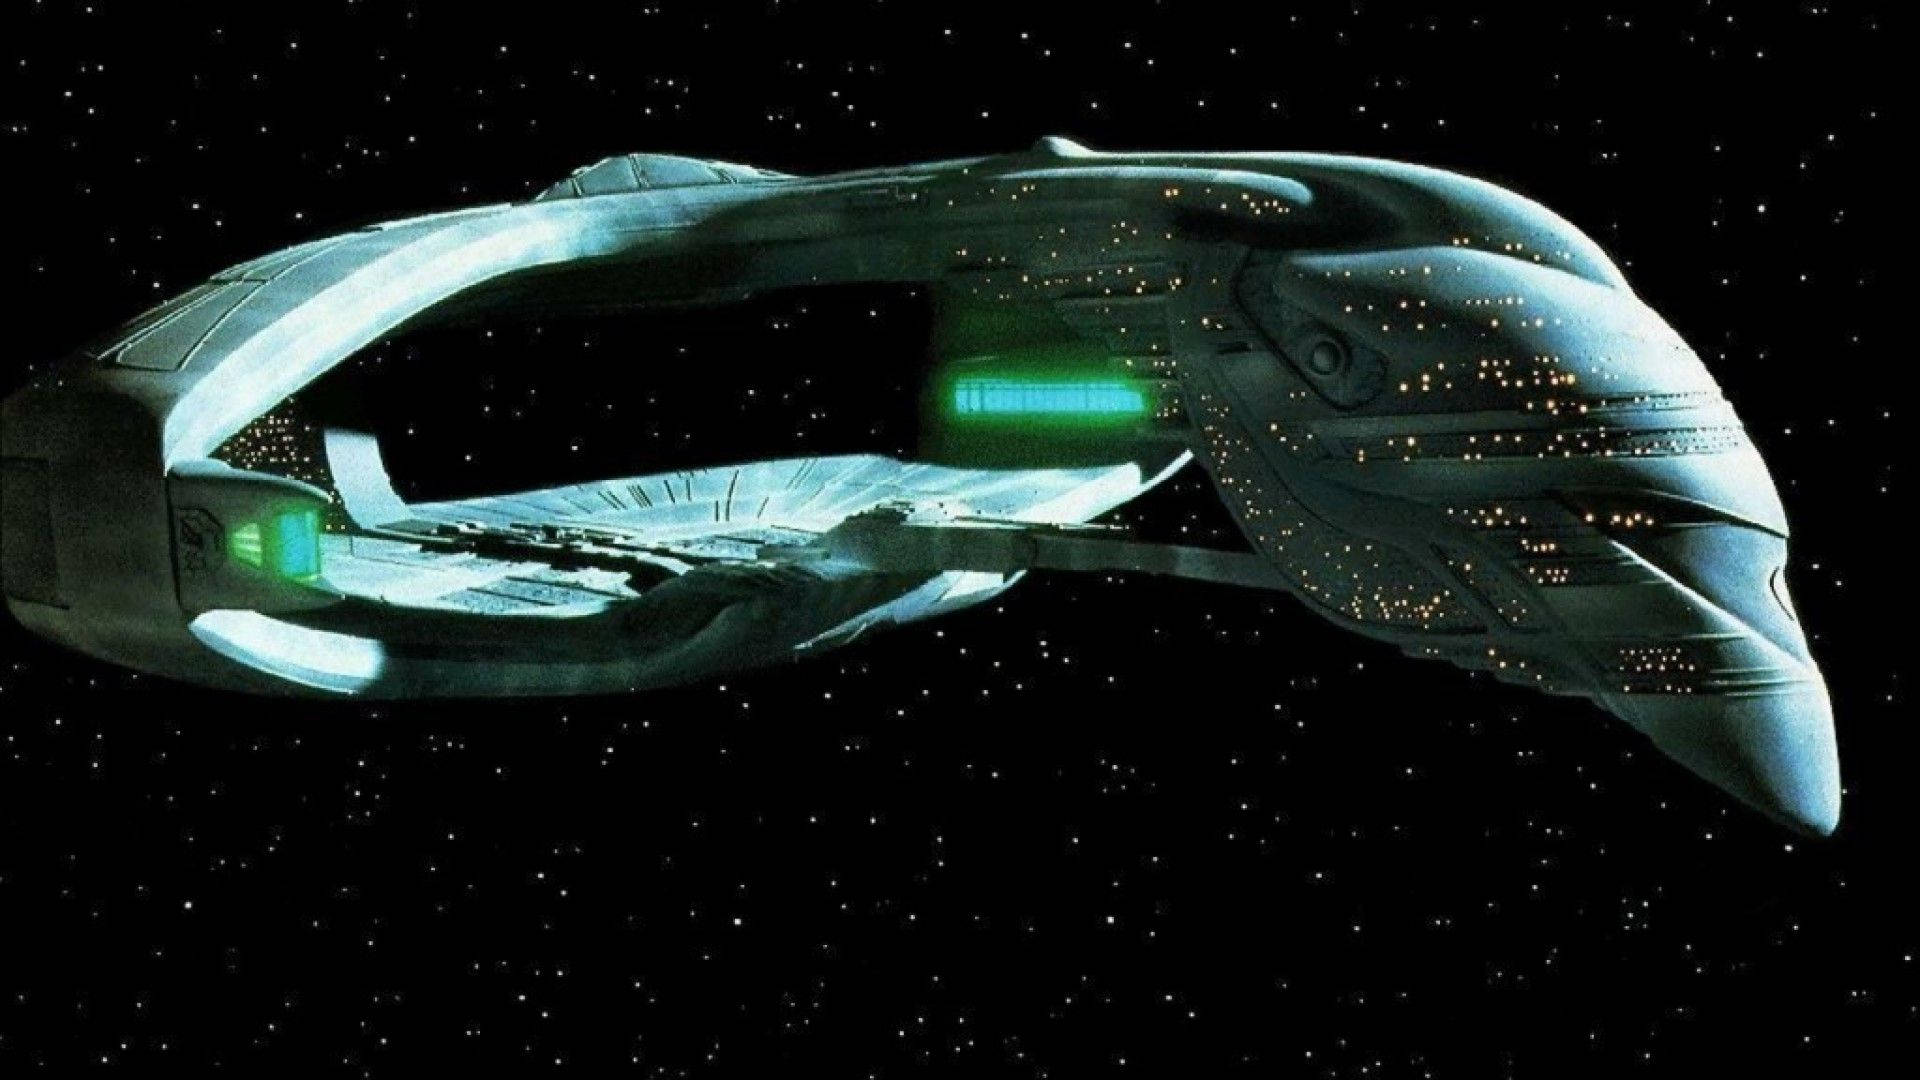 Spaceship Of Star Trek Background